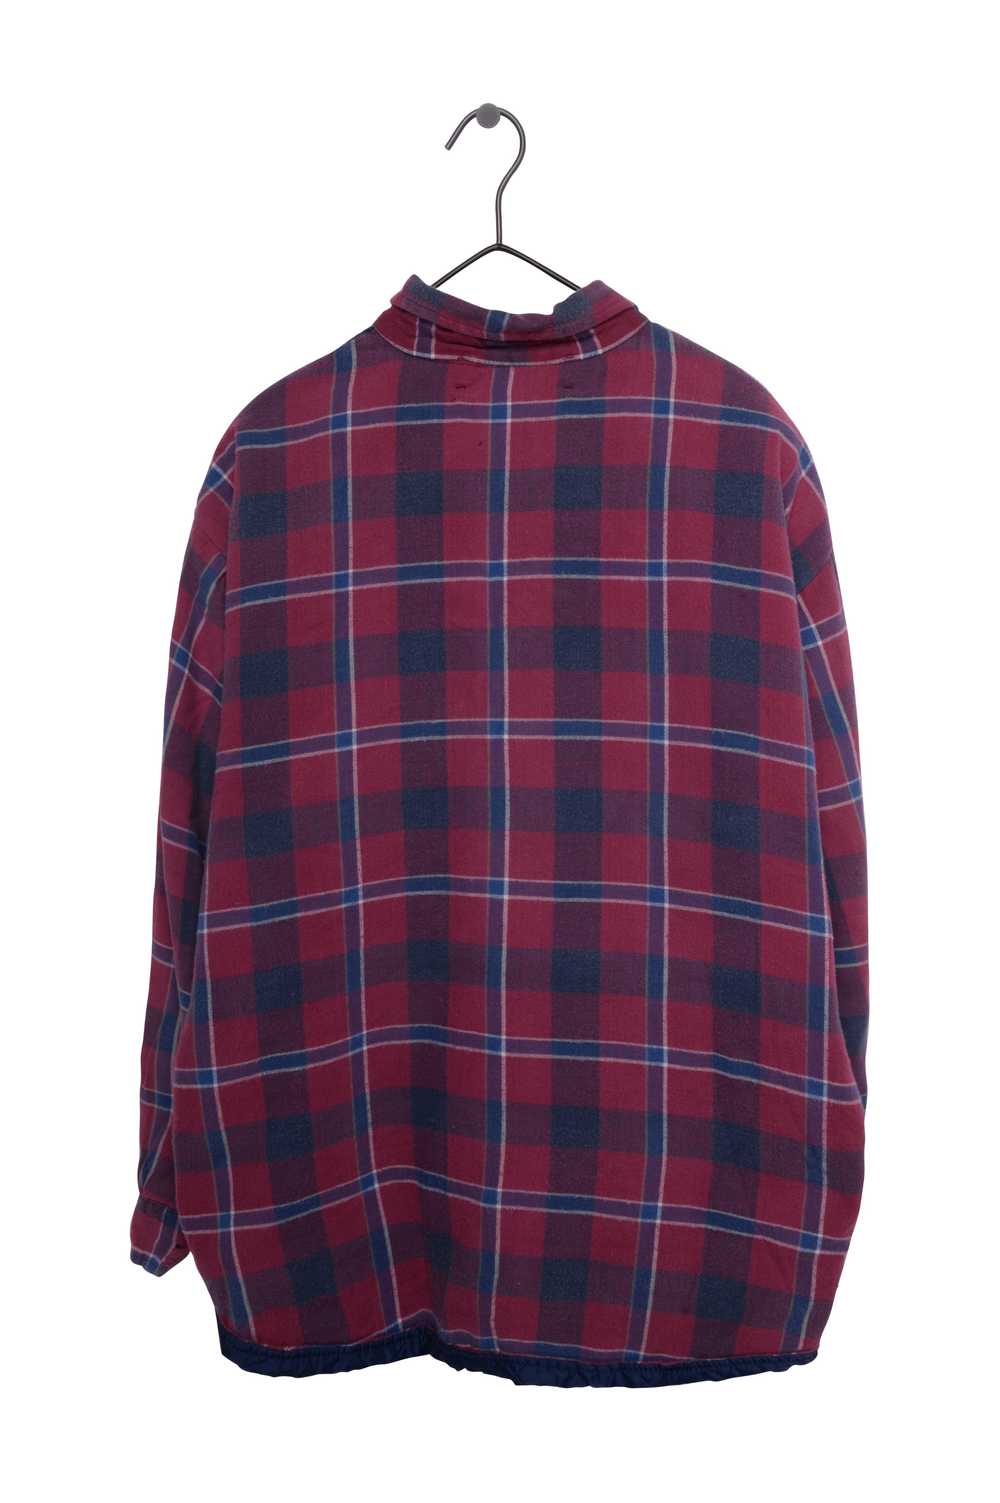 Flannel Jacket - image 3